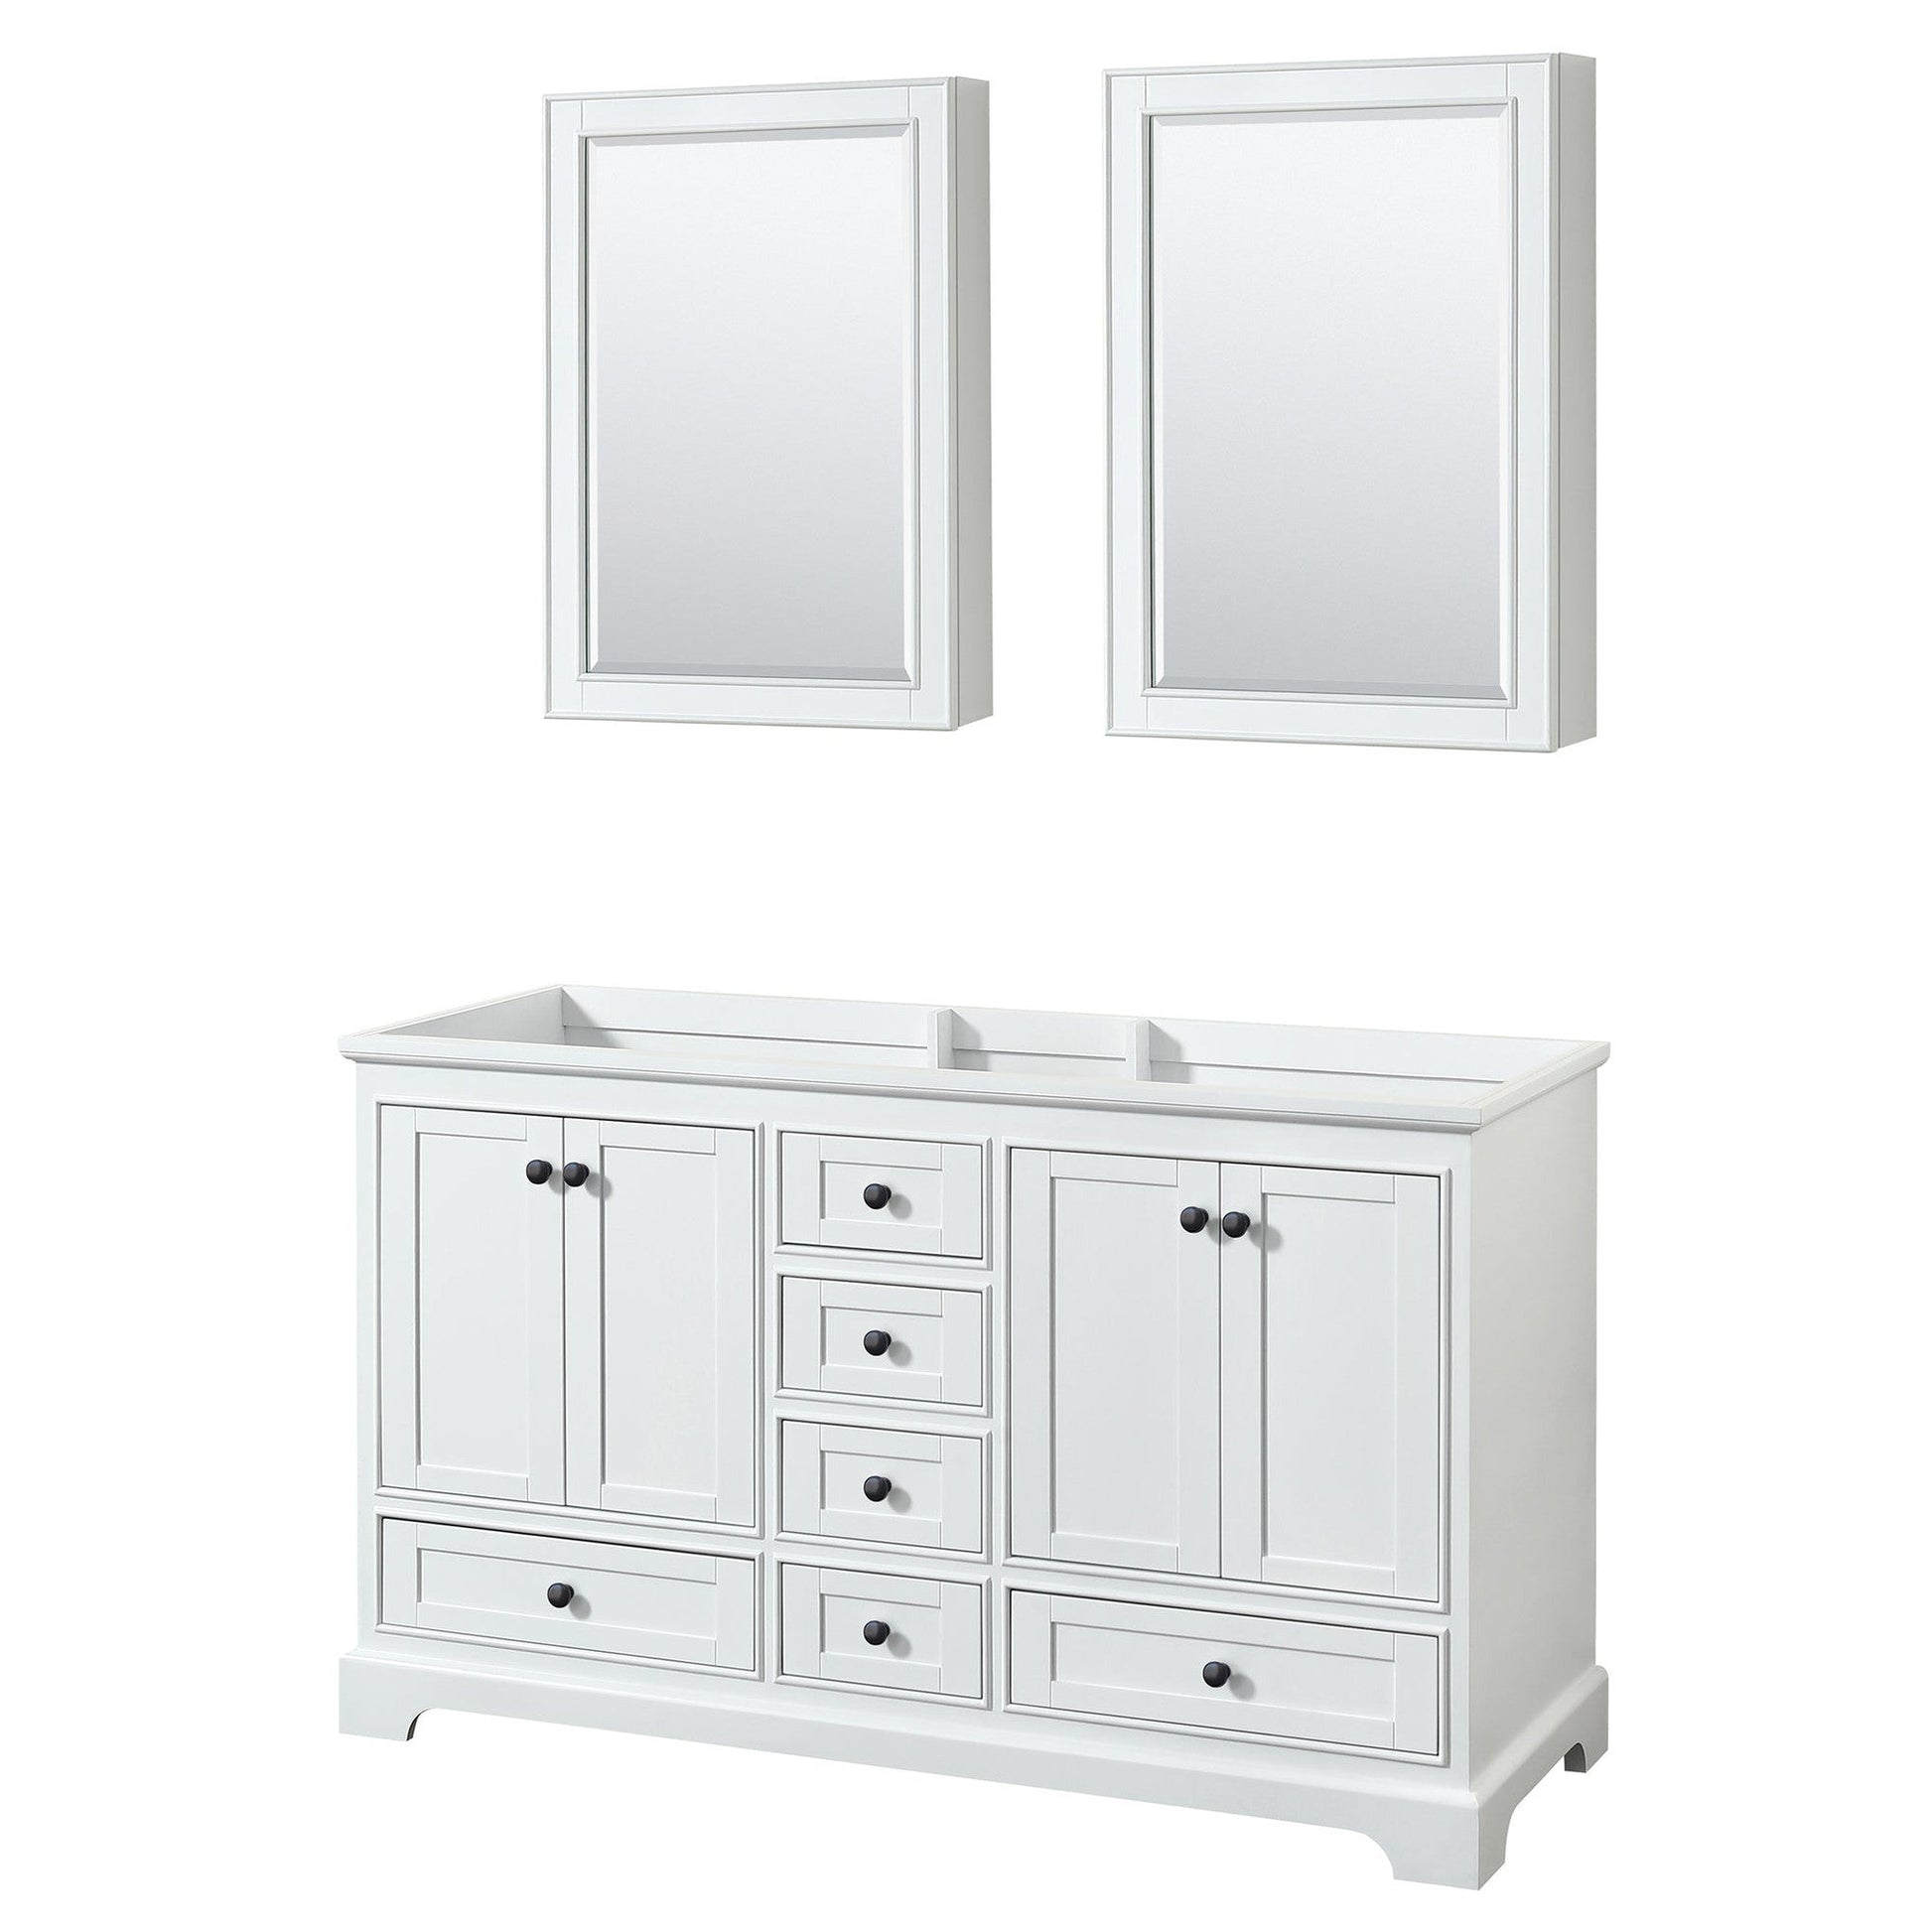 Deborah 60" Double Bathroom Vanity in White, No Countertop, No Sinks, Matte Black Trim, Medicine Cabinets